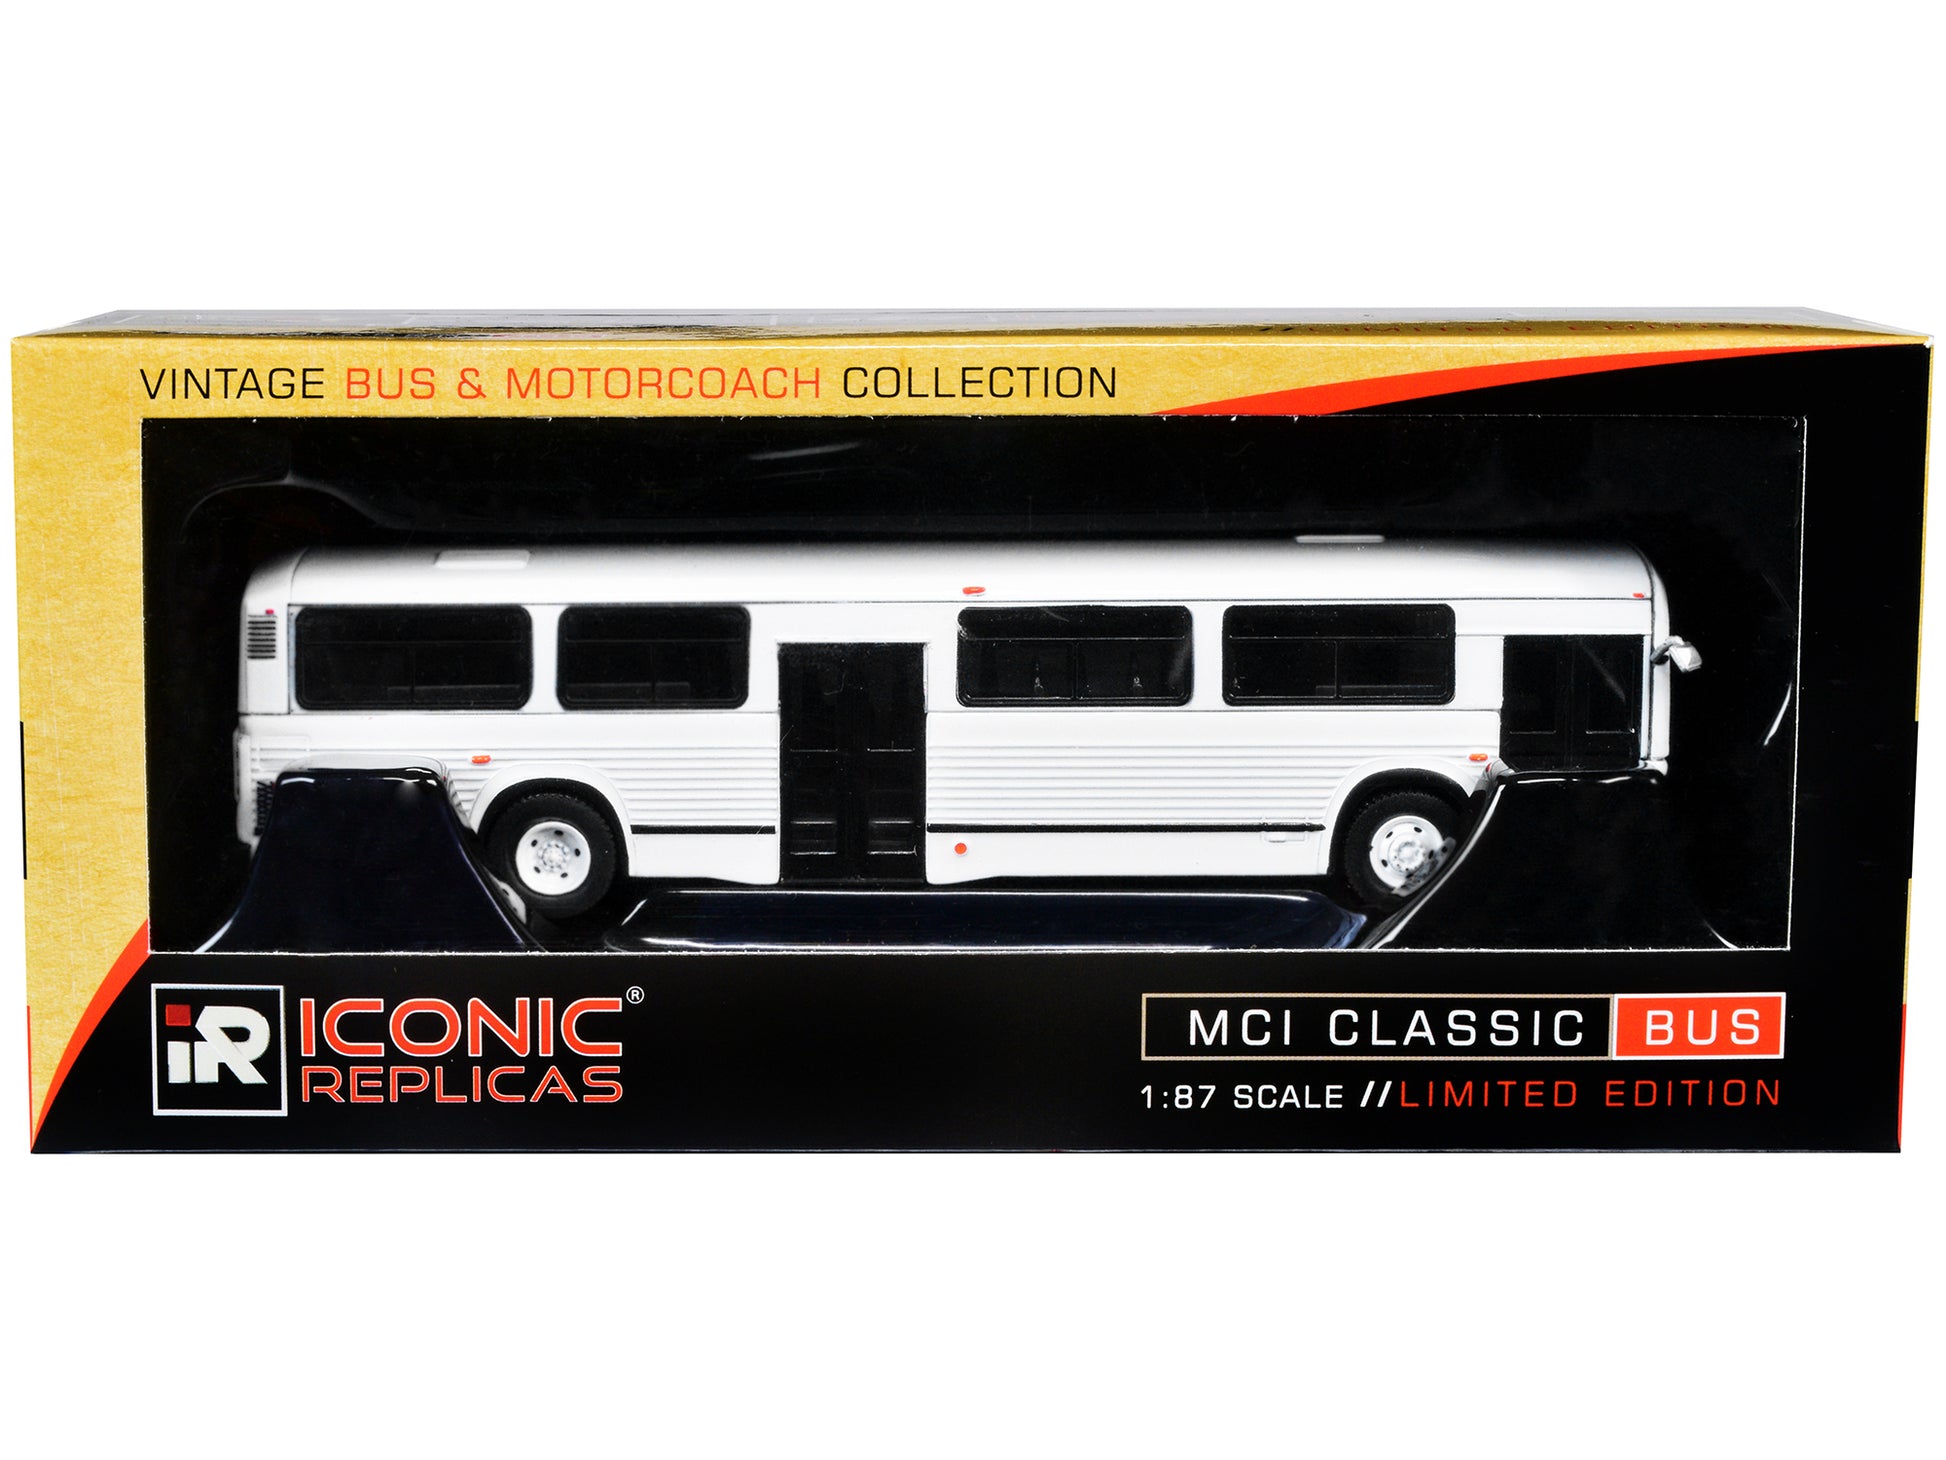 mci classic city bus plain vintage bus motorcoach collection 1/87 diecast model